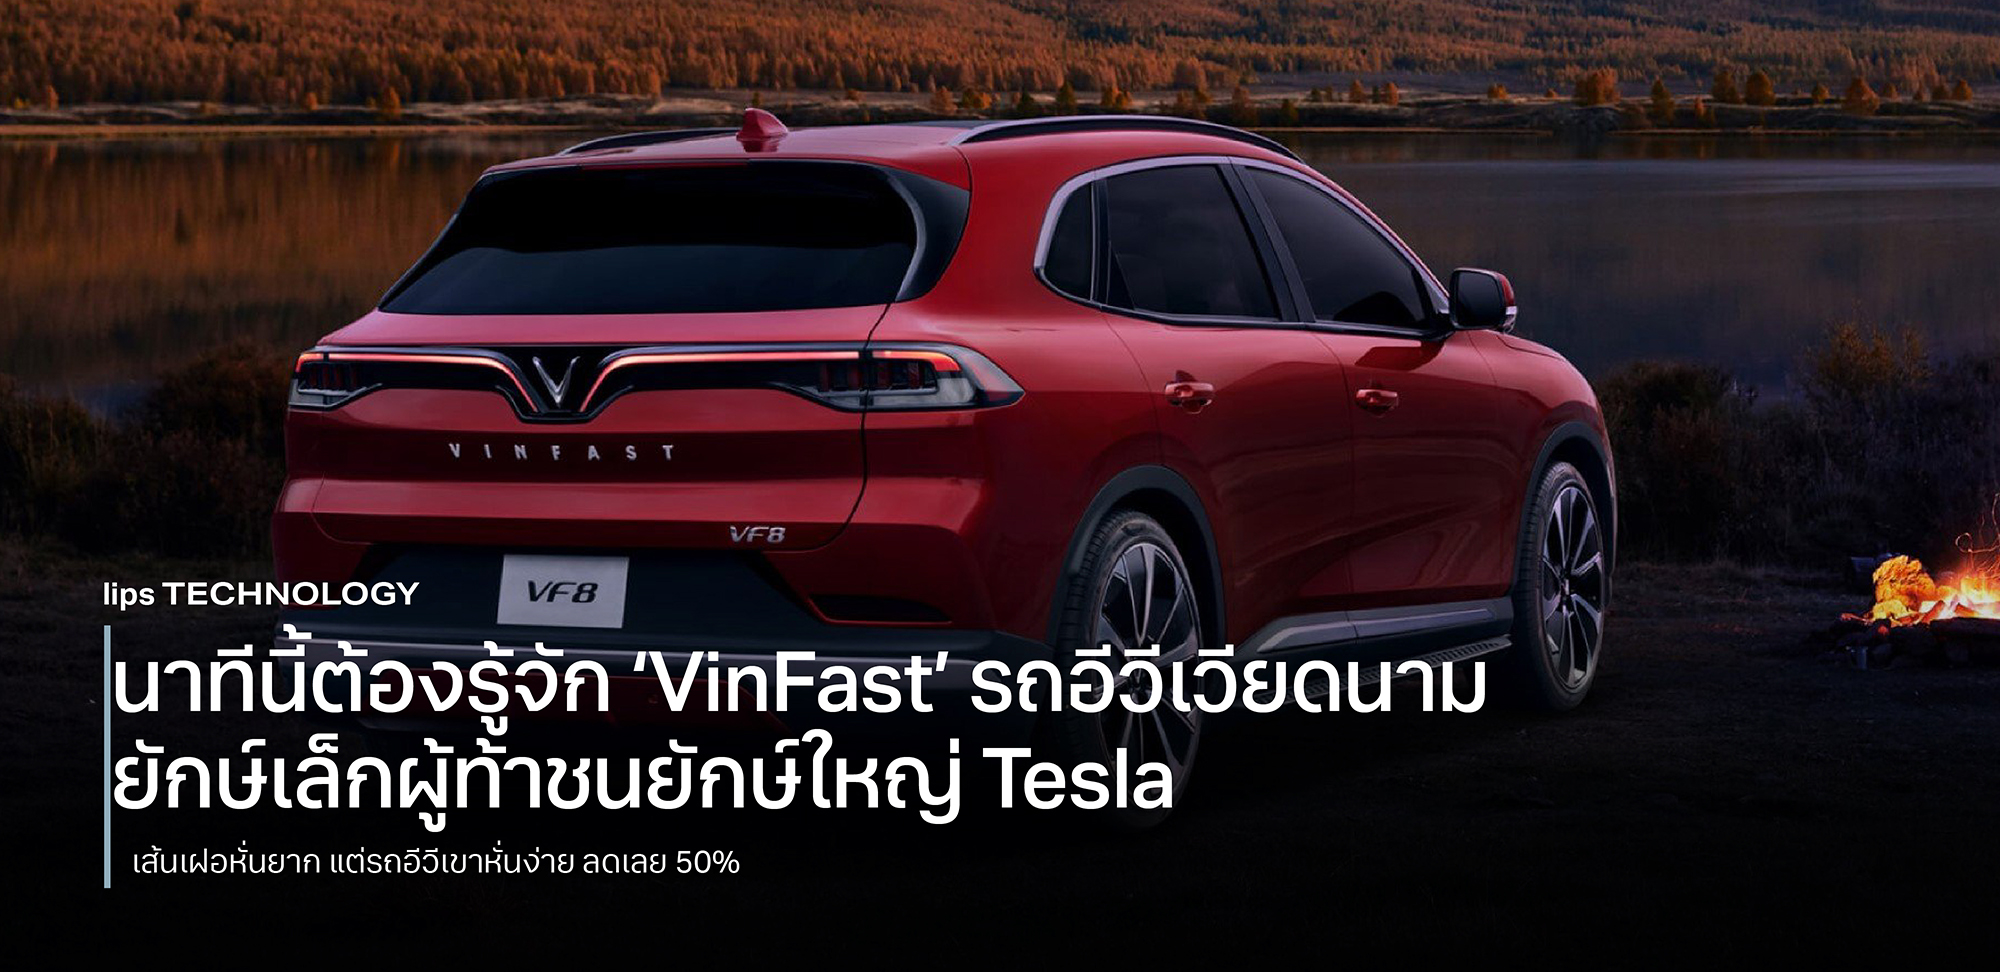 นาทีนี้ต้องรู้จัก ‘VinFast’ รถอีวีเวียดนาม ยักษ์เล็กผู้ท้าชนยักษ์ใหญ่ Tesla